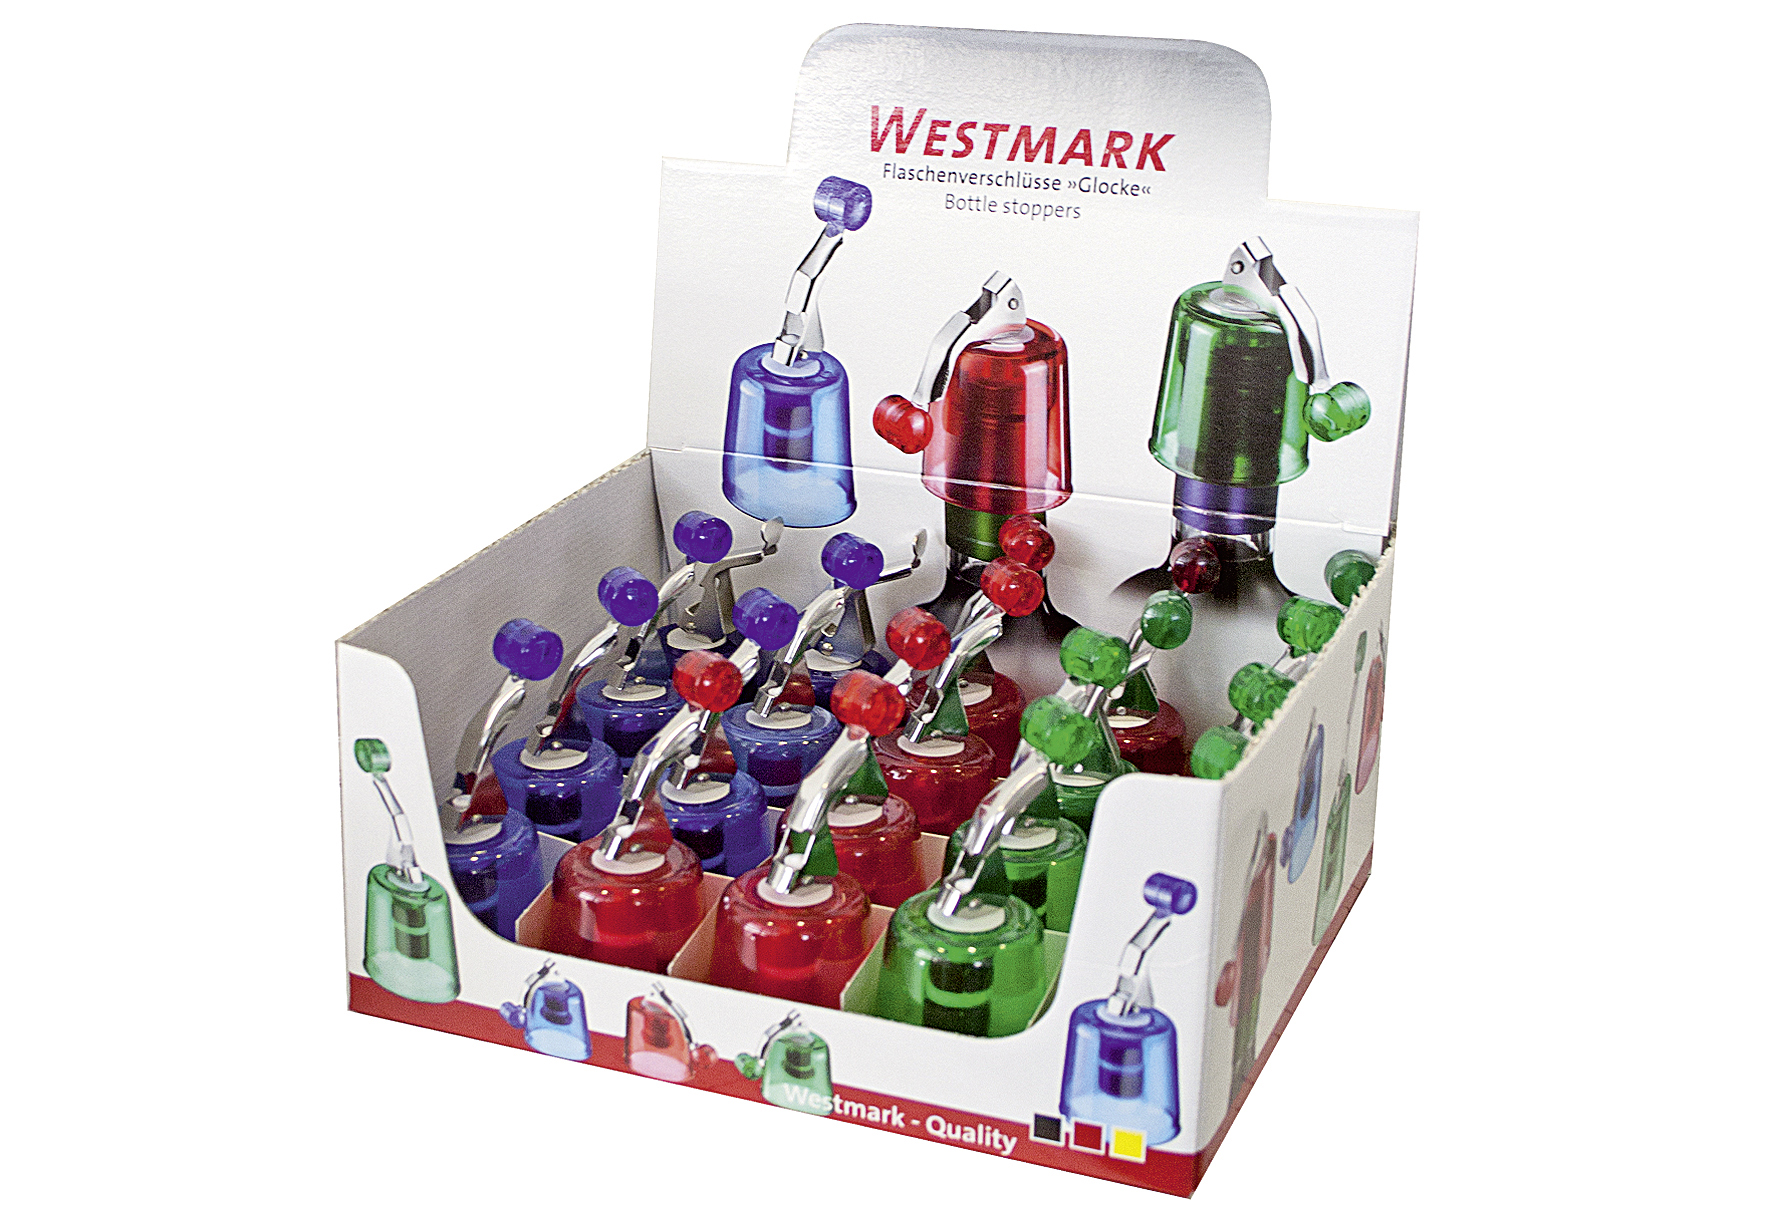 WESTMARK Flaschenverschluß Glocke Colour Edition farbig sortiert